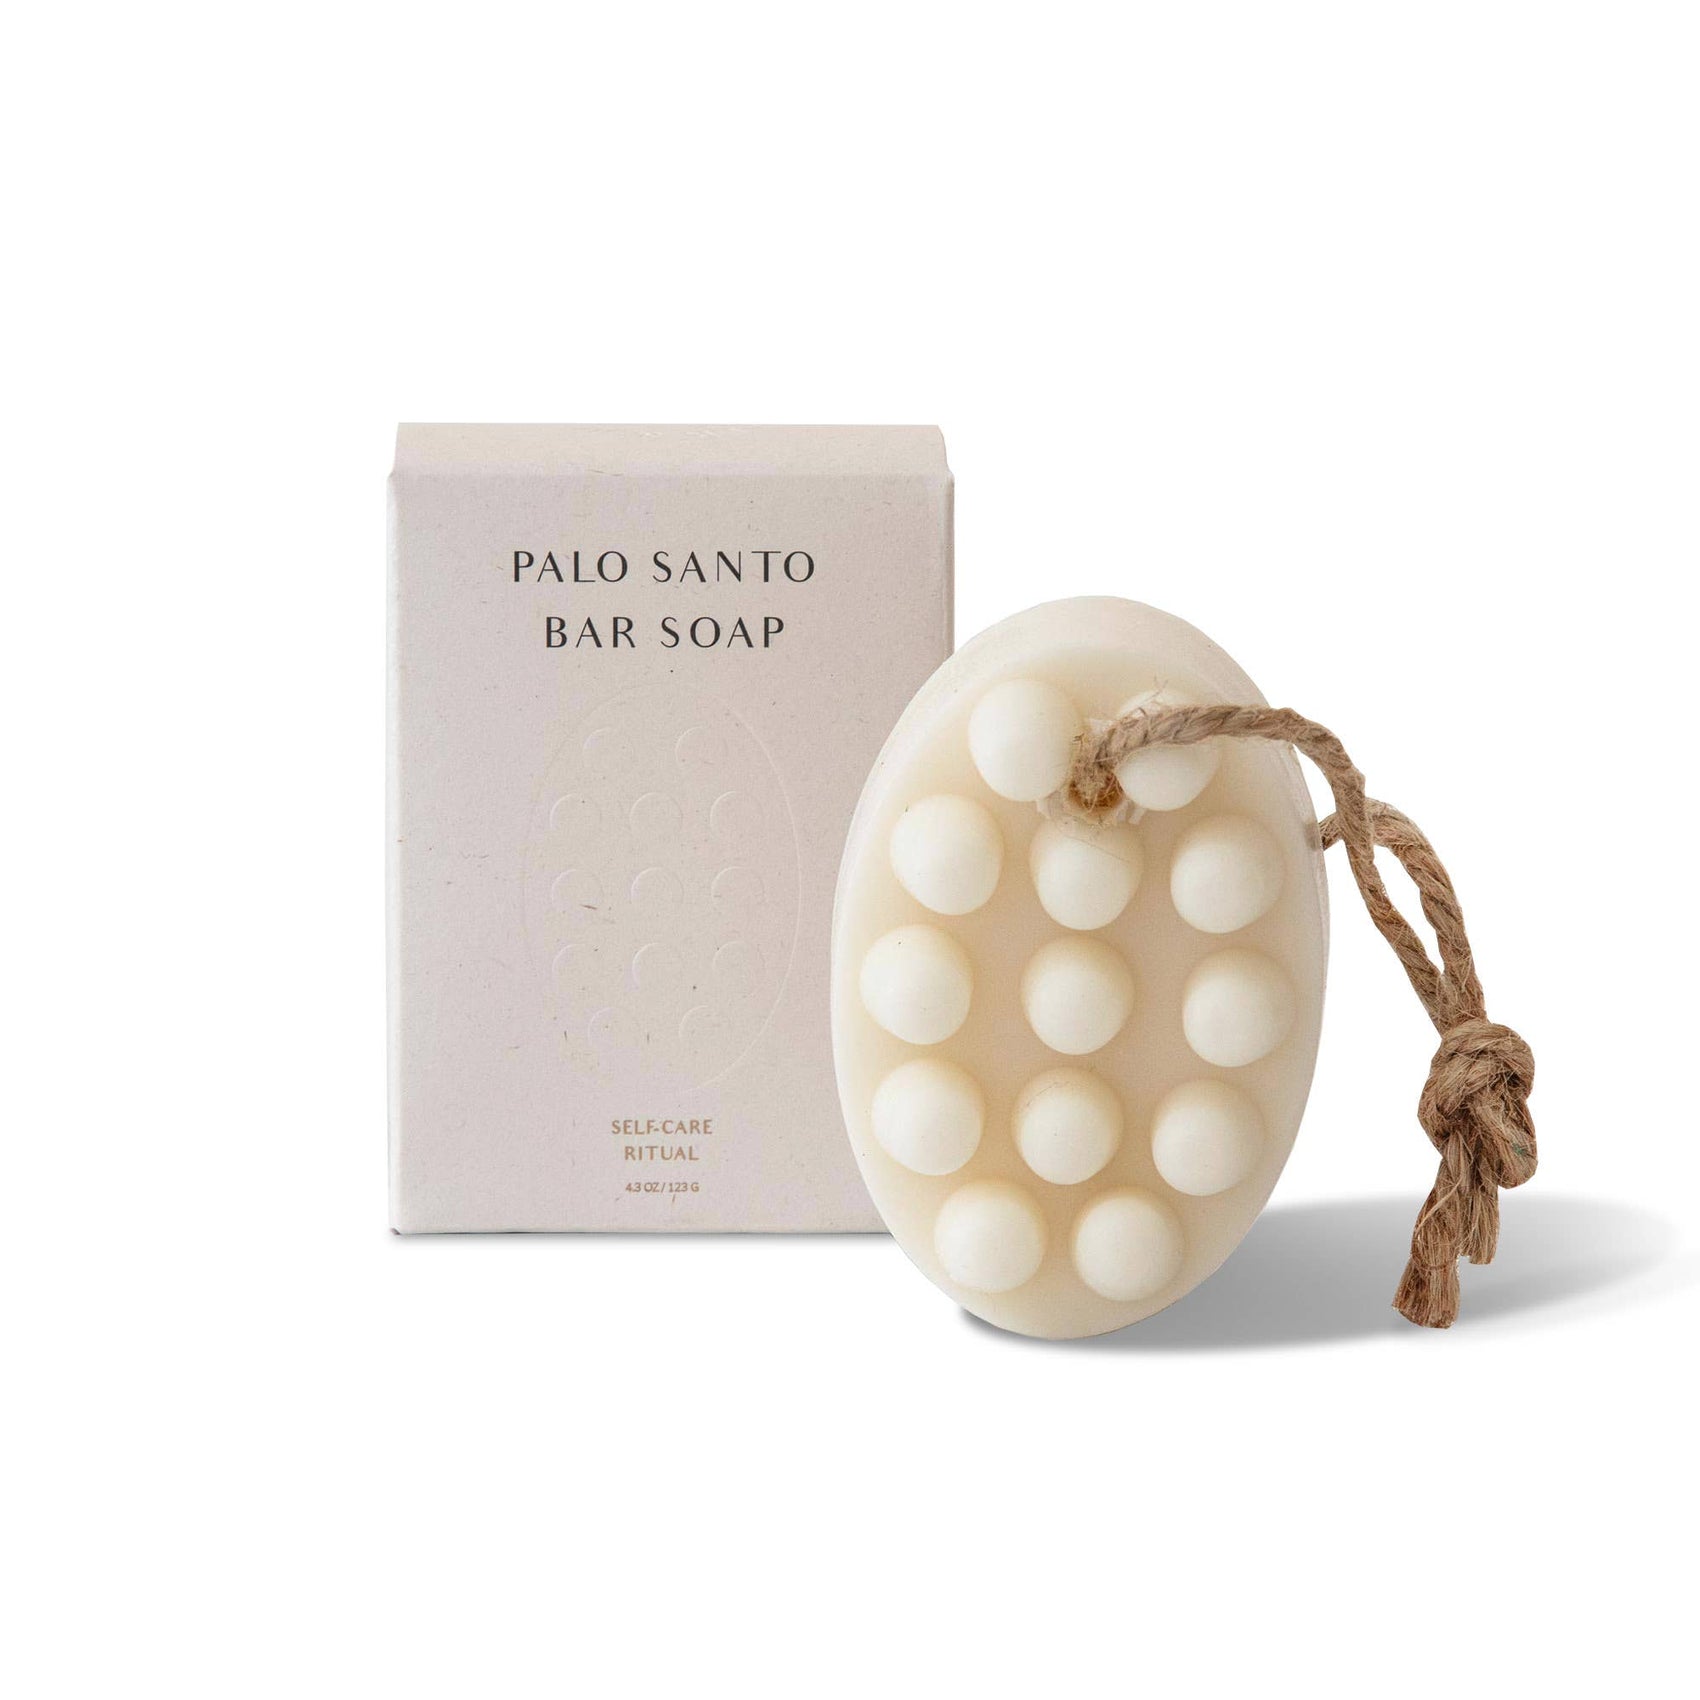 Palo Santo Bar Soap